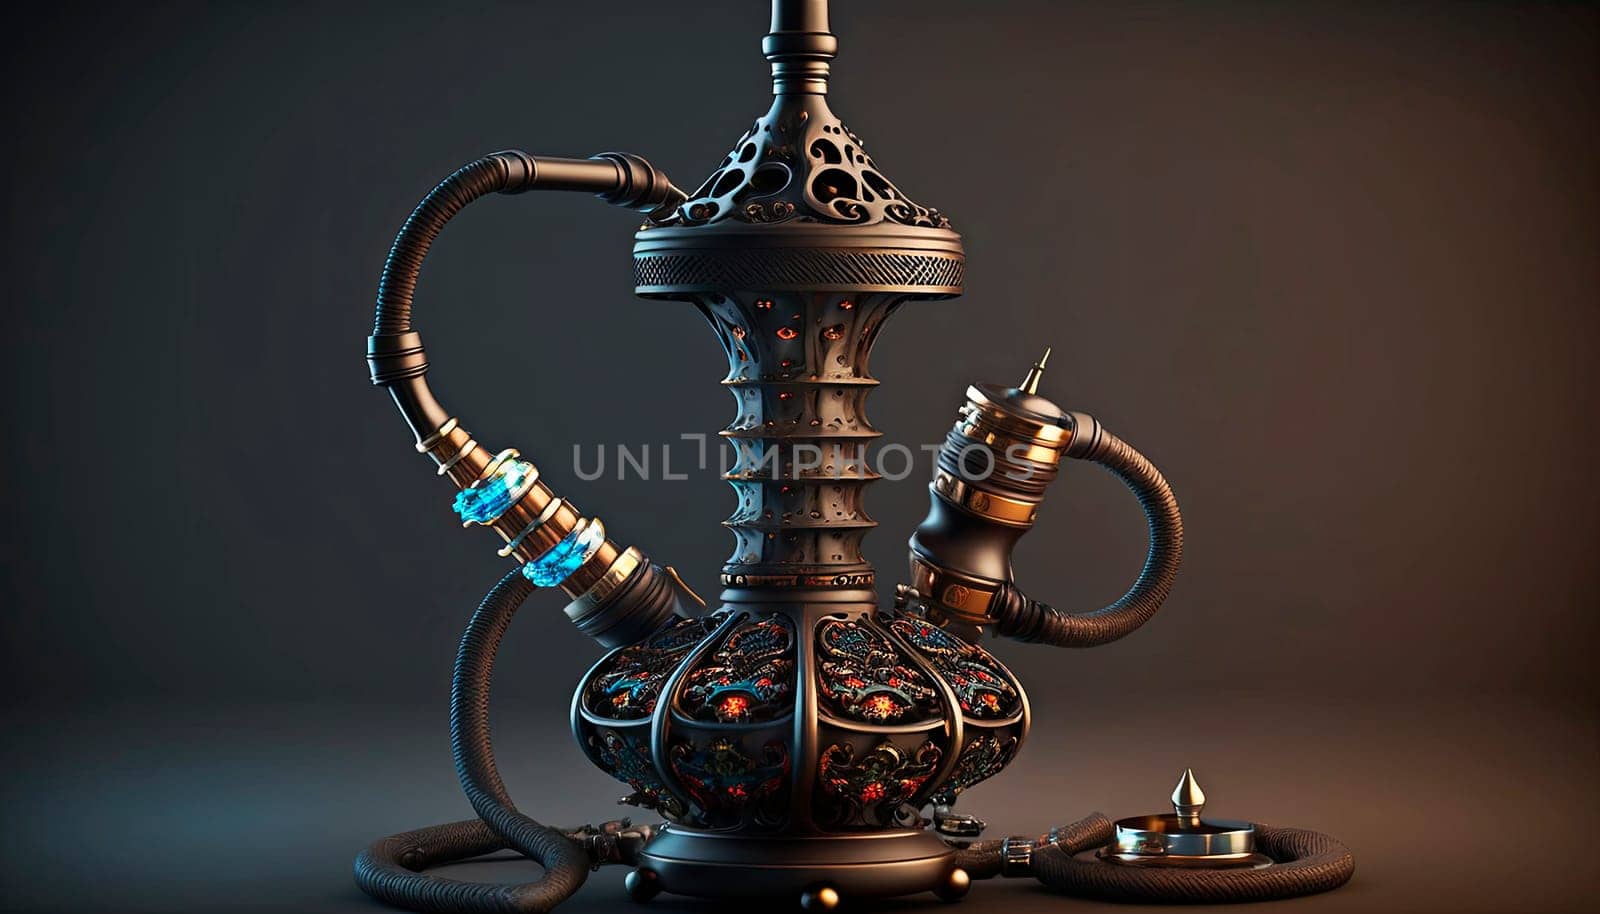 hookah smoke on the table. by yanadjana